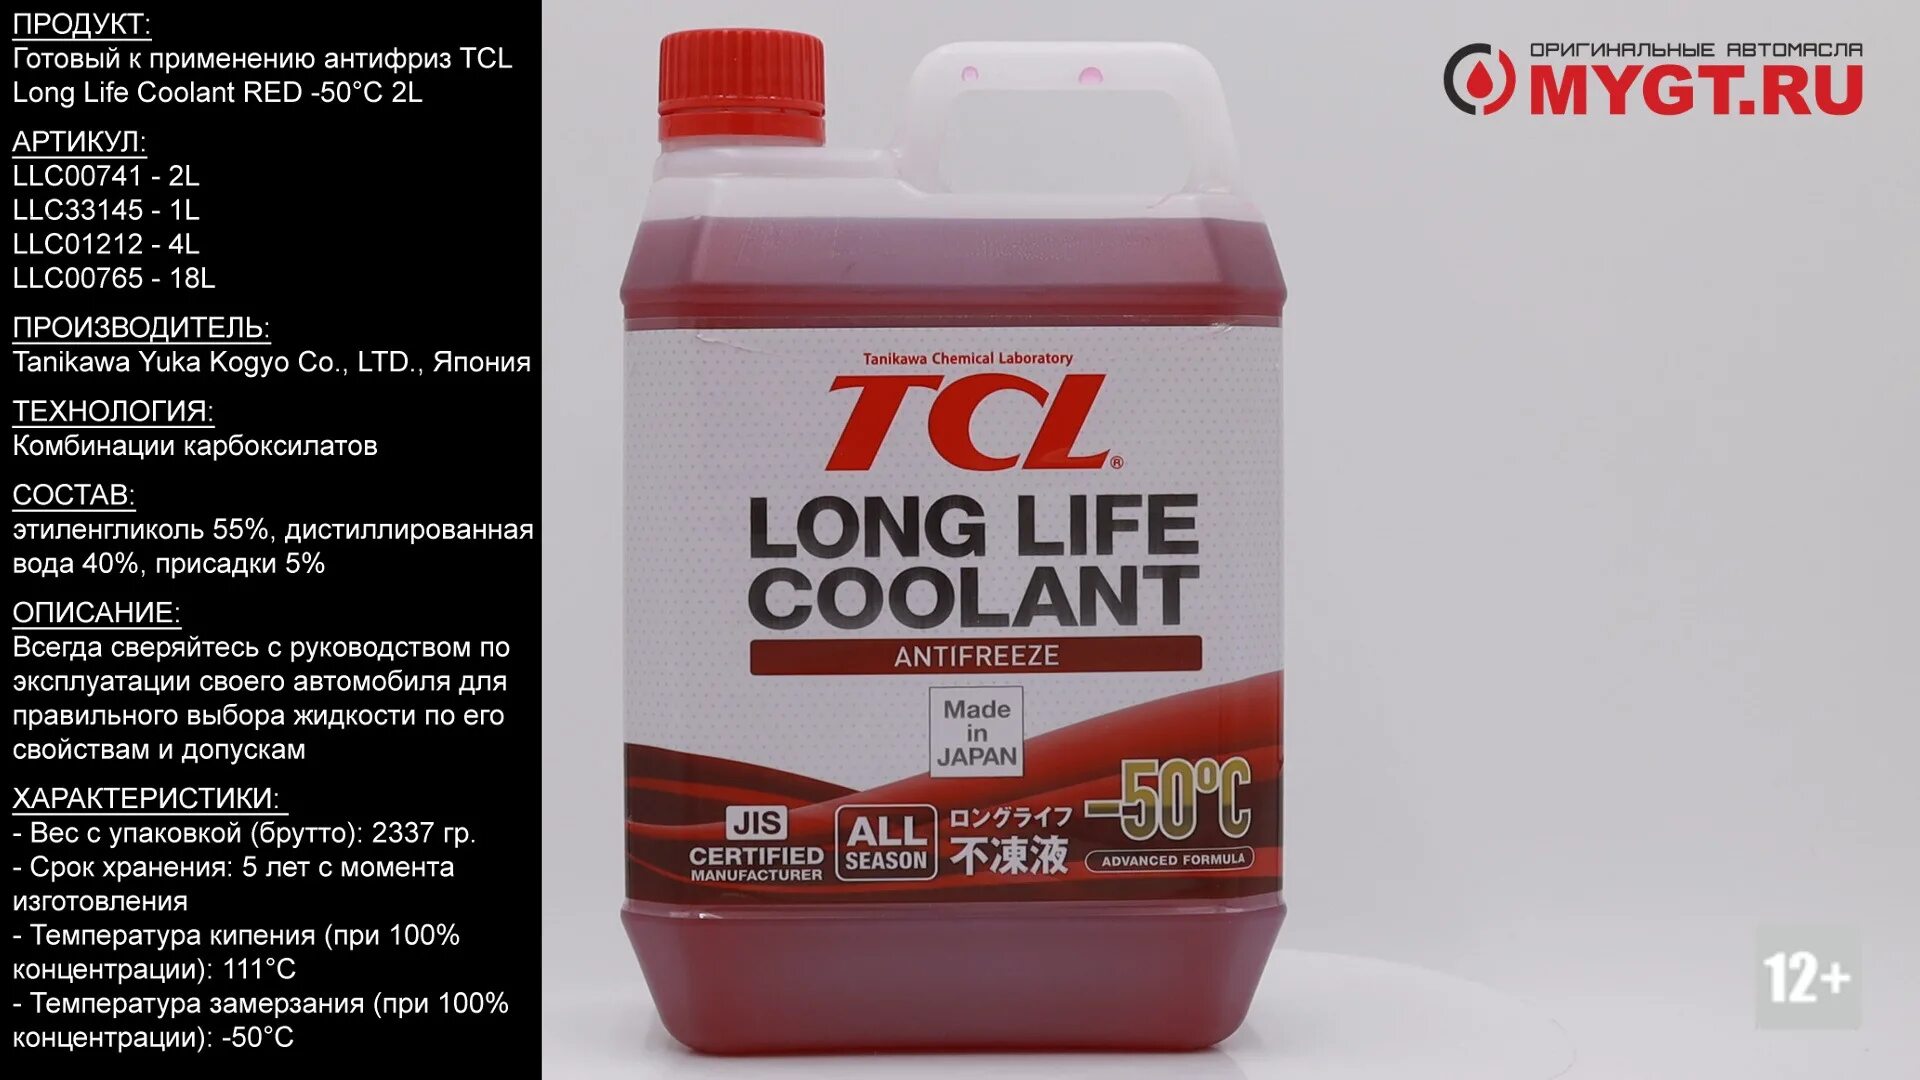 TCL LLC антифриз -40 Red 2l. Антифриз TCL LLC (long Life Coolant) -50. Антифриз TCL LLC Red -50. Антифриз TCL красный -50. Tcl long life coolant